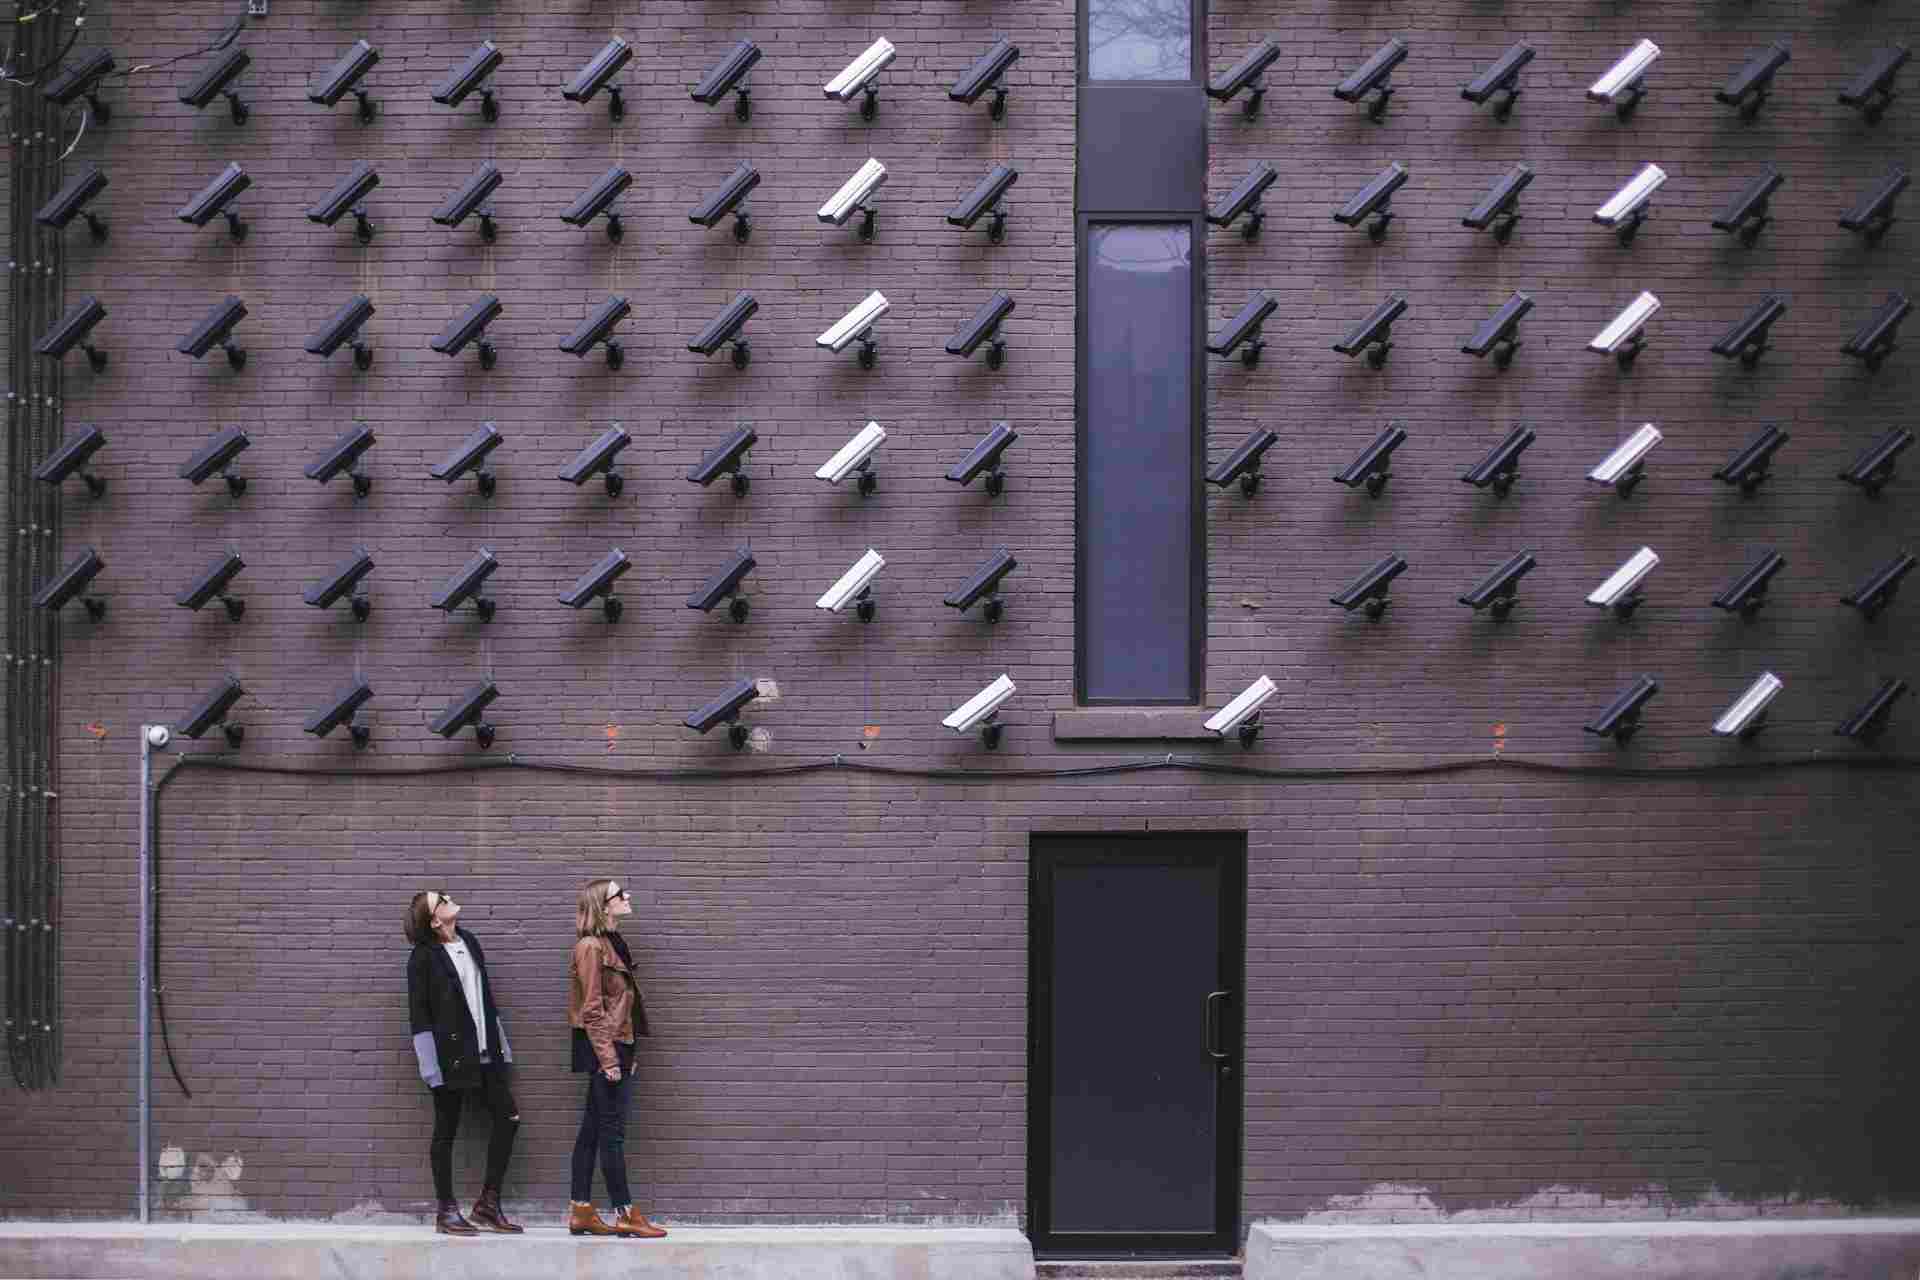 Dos personas de pie junto a una pared de ladrillos oscuros observan numerosas cámaras de seguridad apuntando en su dirección. La escena da una sensación de vigilancia.